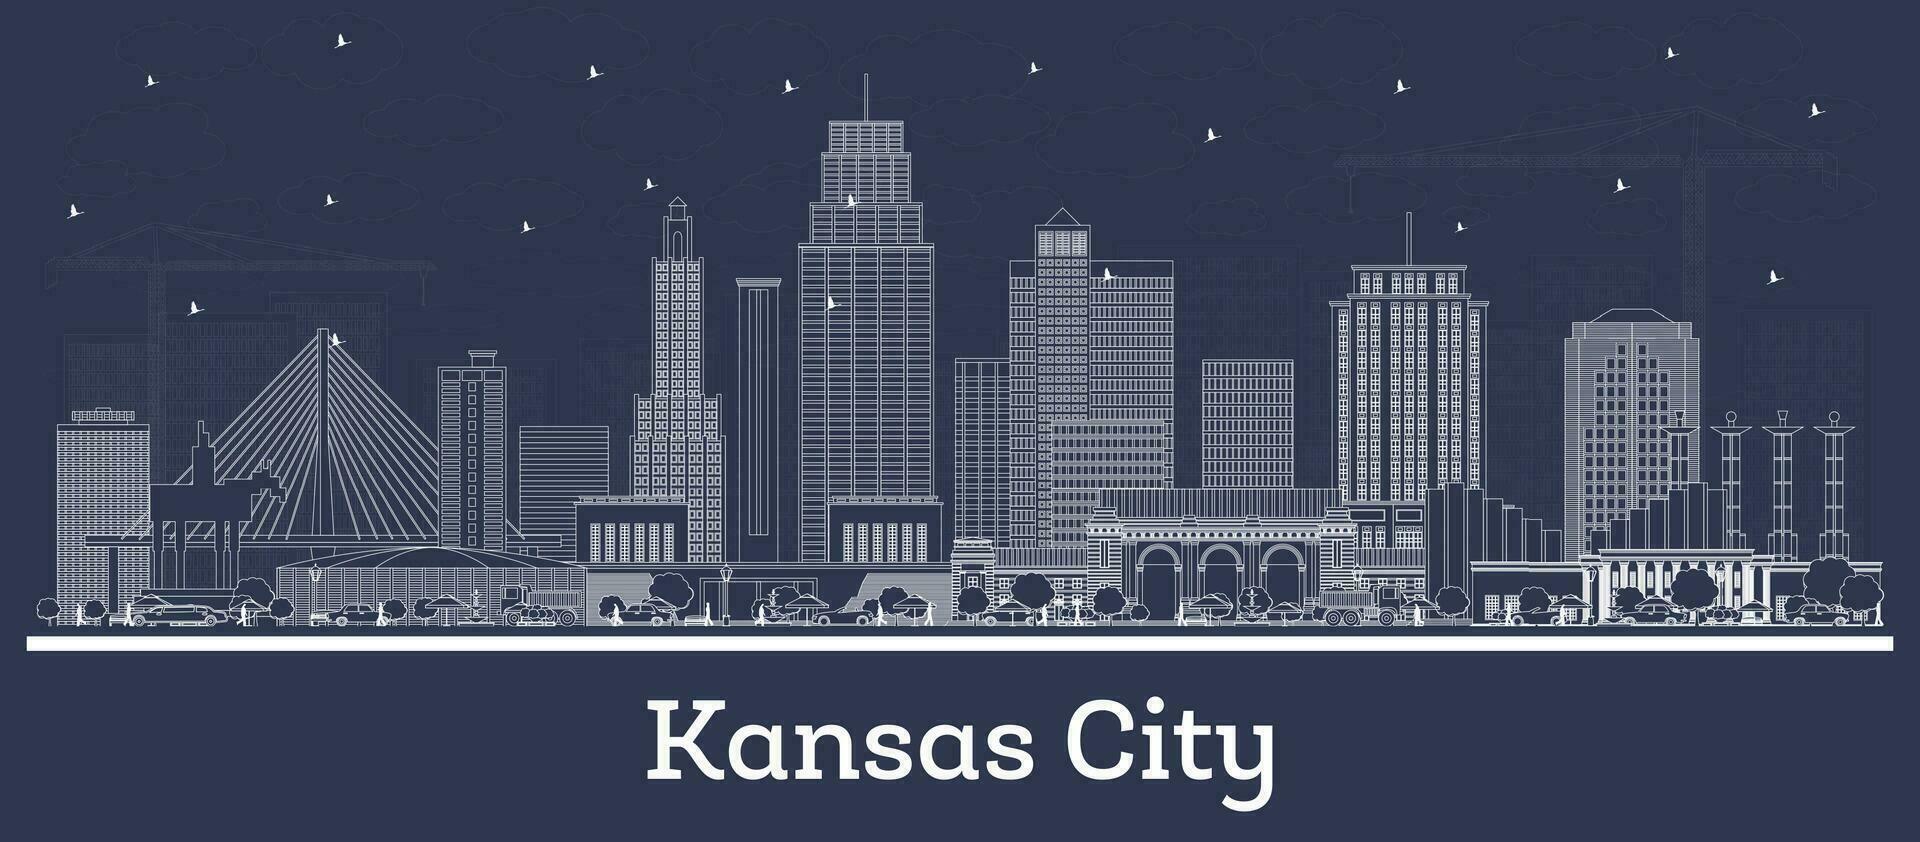 schets Kansas stad Missouri stad horizon met wit gebouwen. bedrijf reizen en toerisme concept met historisch architectuur. Kansas stad Verenigde Staten van Amerika stadsgezicht met oriëntatiepunten. vector